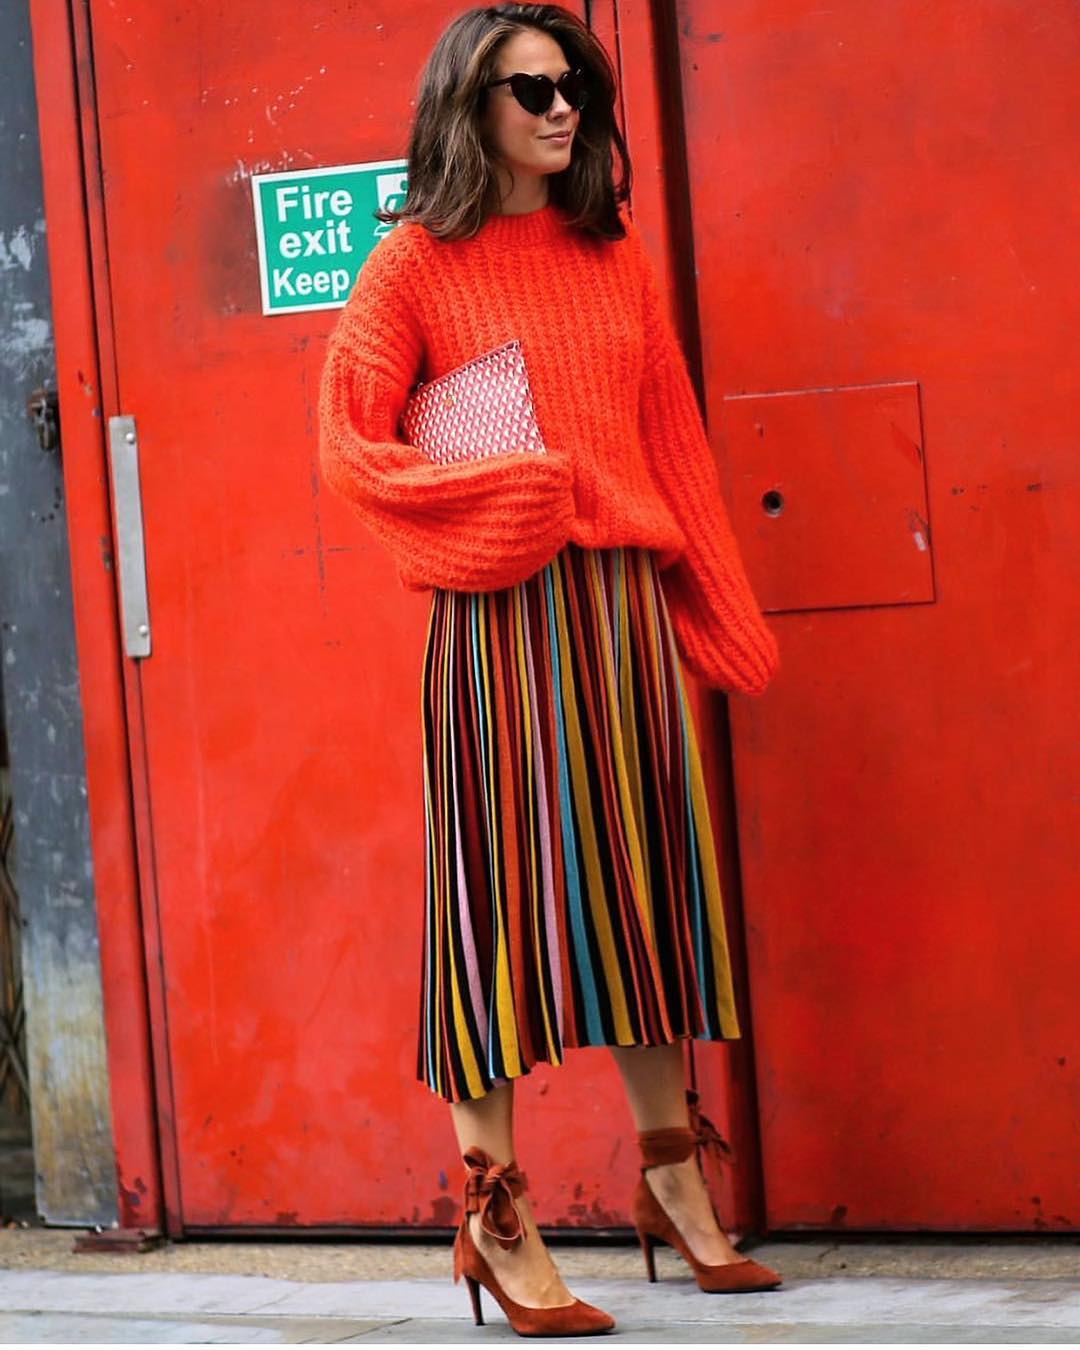 Falda de rayas: 80 ideas sobre cómo incluir esta pieza en tu look